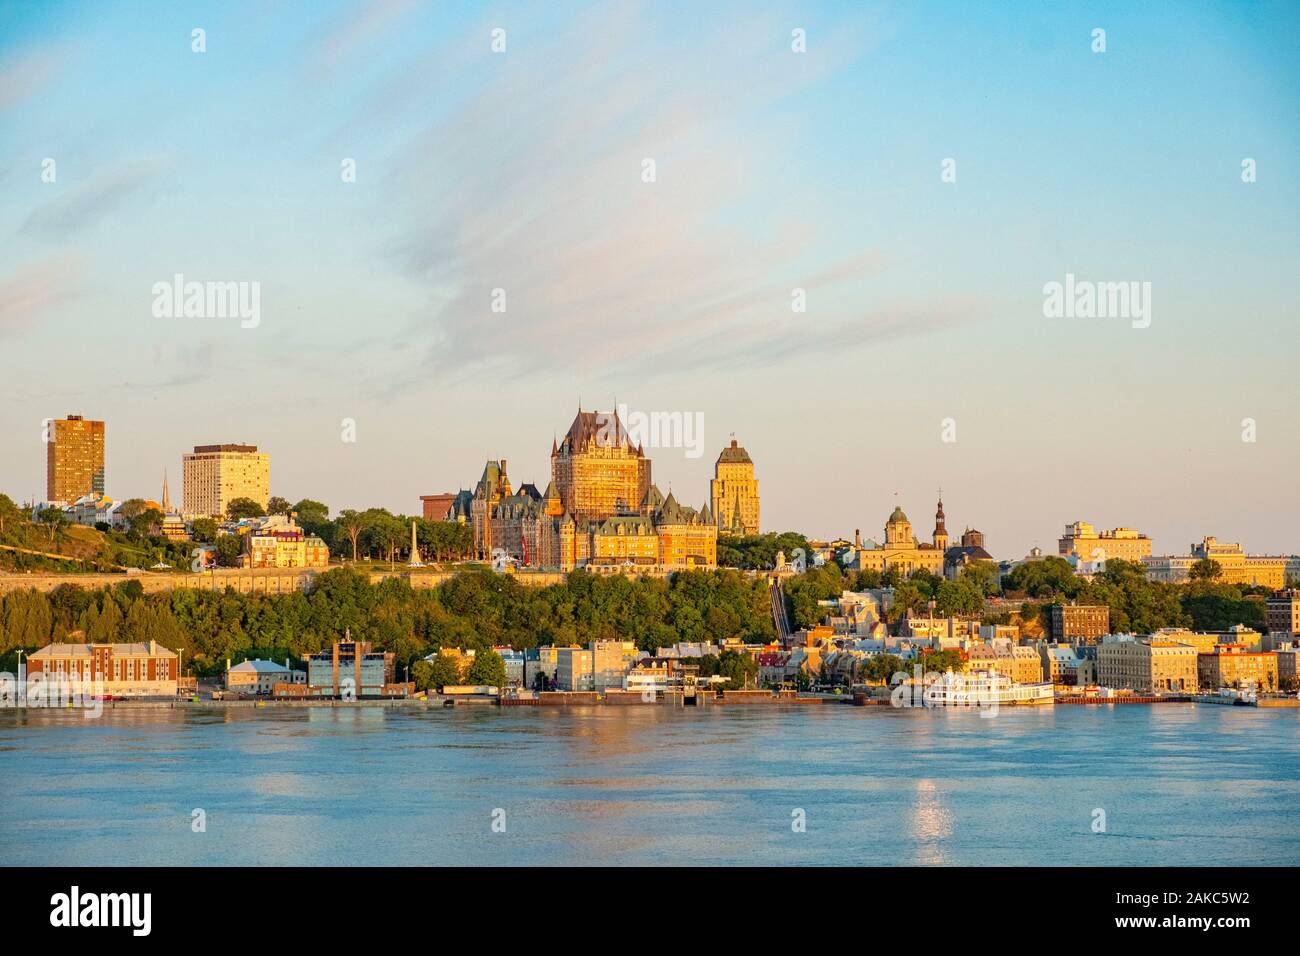 Le Canada, la province du Québec, vue de la ville de Québec avec le Château Frontenac et le fleuve Saint-Laurent de Levis Banque D'Images